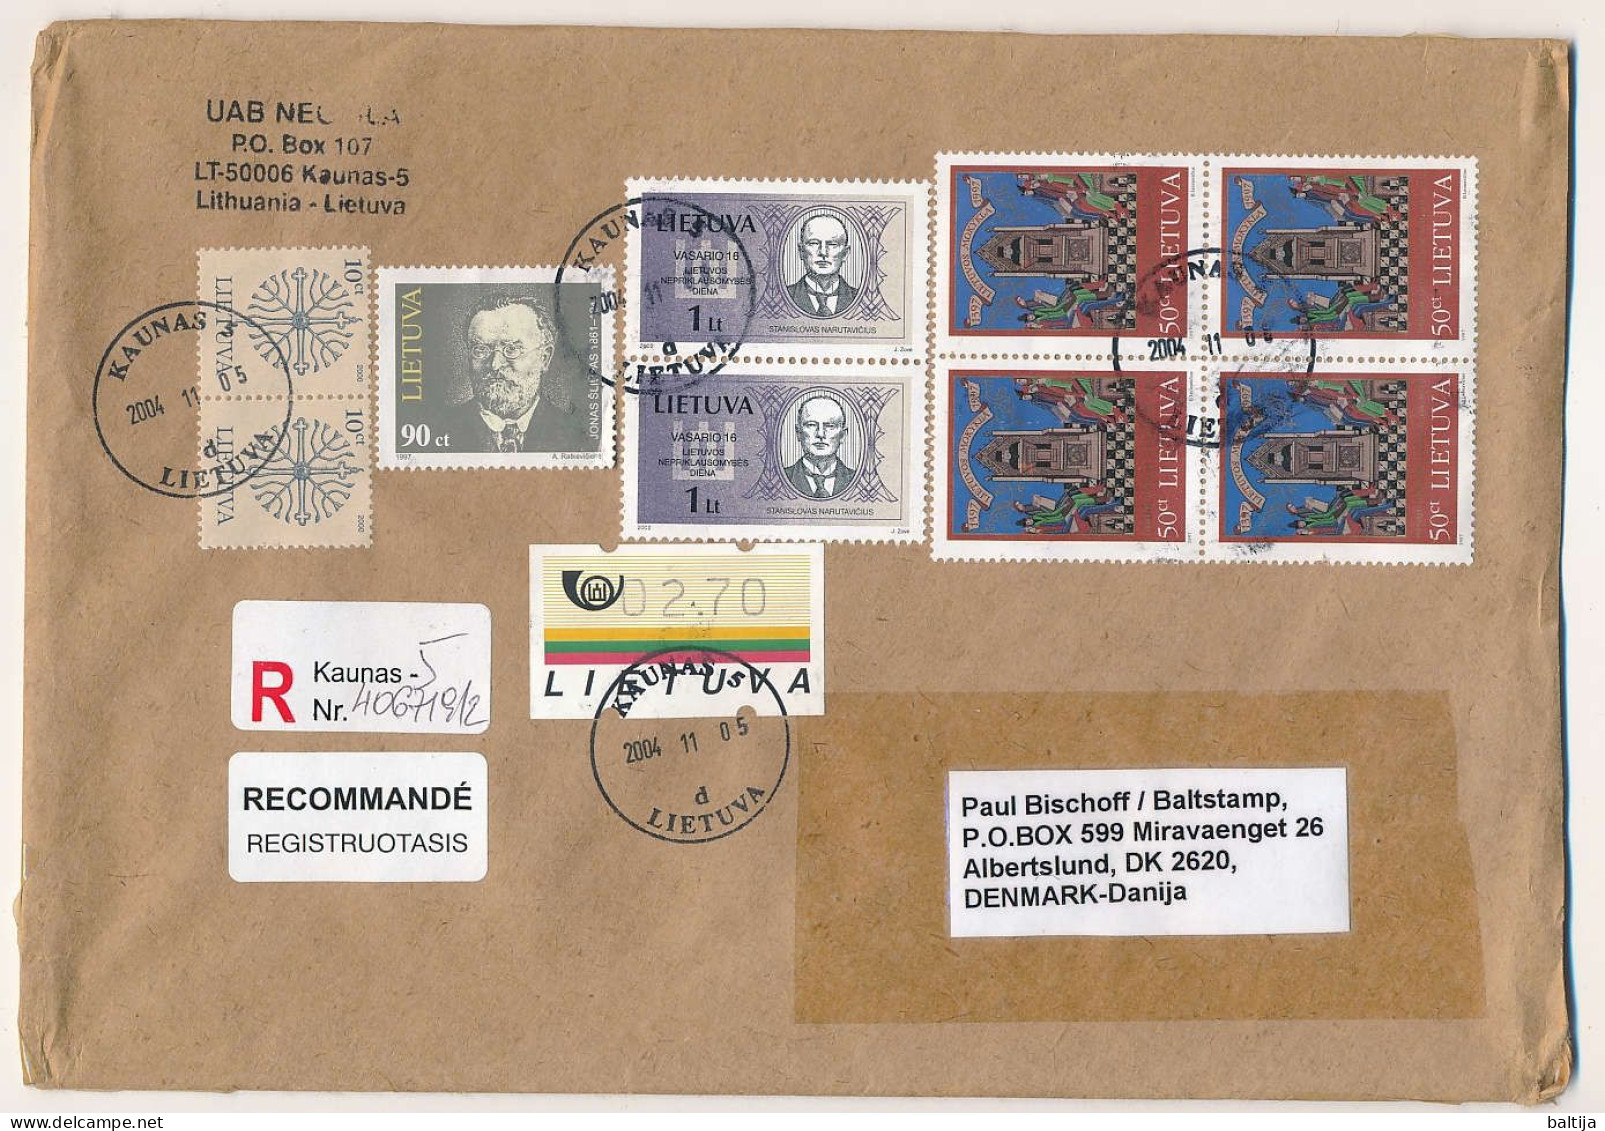 Registered Cover Abroad ATM Stamp - 5 November 2004 Kaunas-5 - Lituania